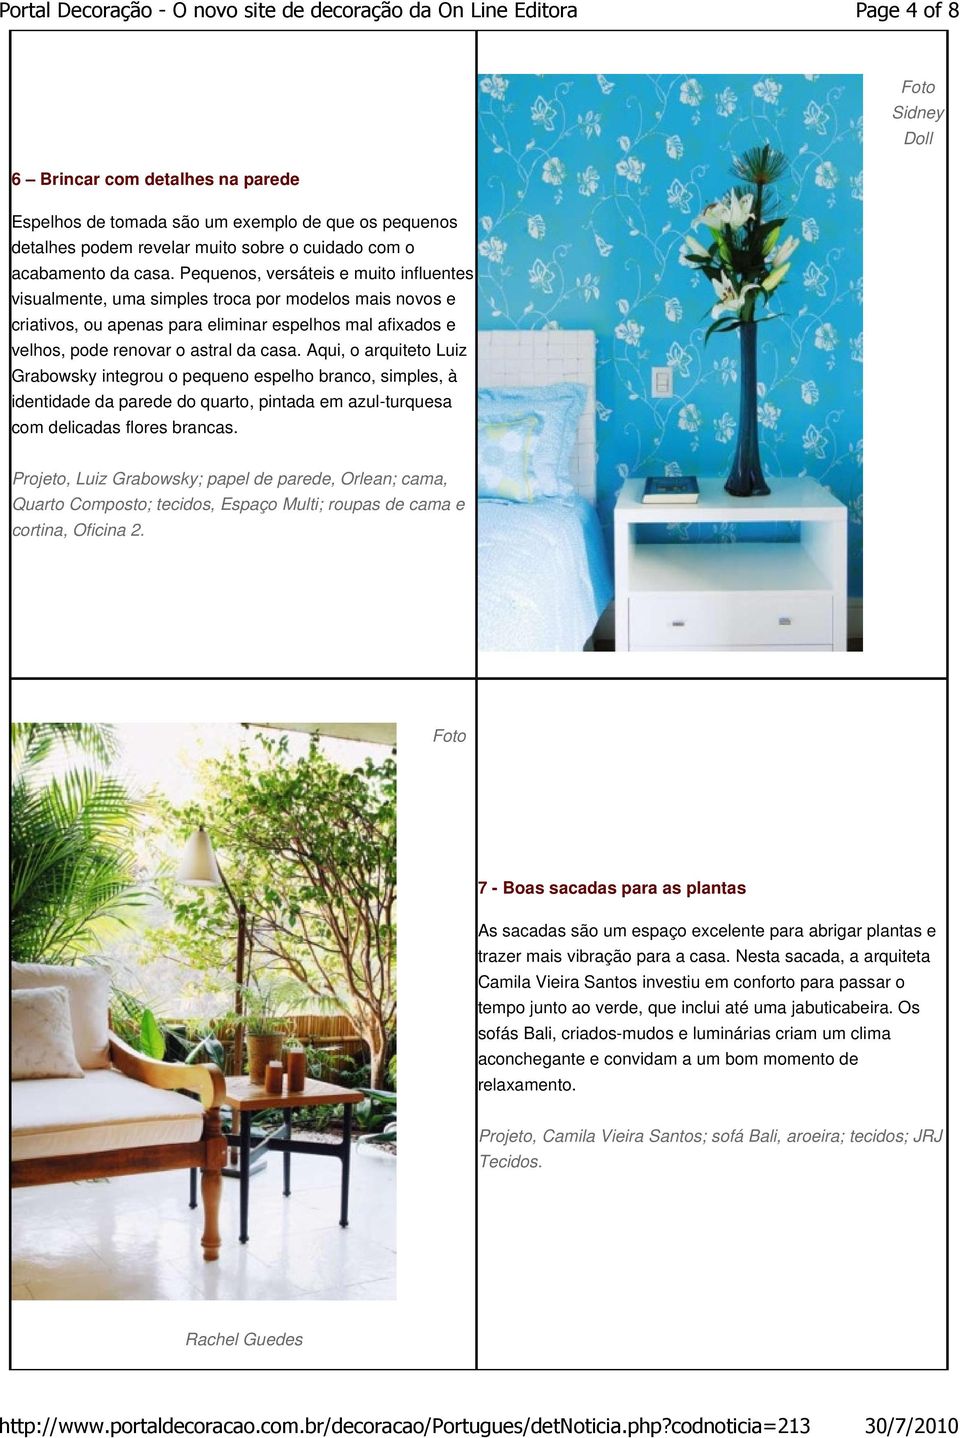 Aqui, o arquiteto Luiz Grabowsky integrou o pequeno espelho branco, simples, à identidade da parede do quarto, pintada em azul-turquesa com delicadas flores brancas.